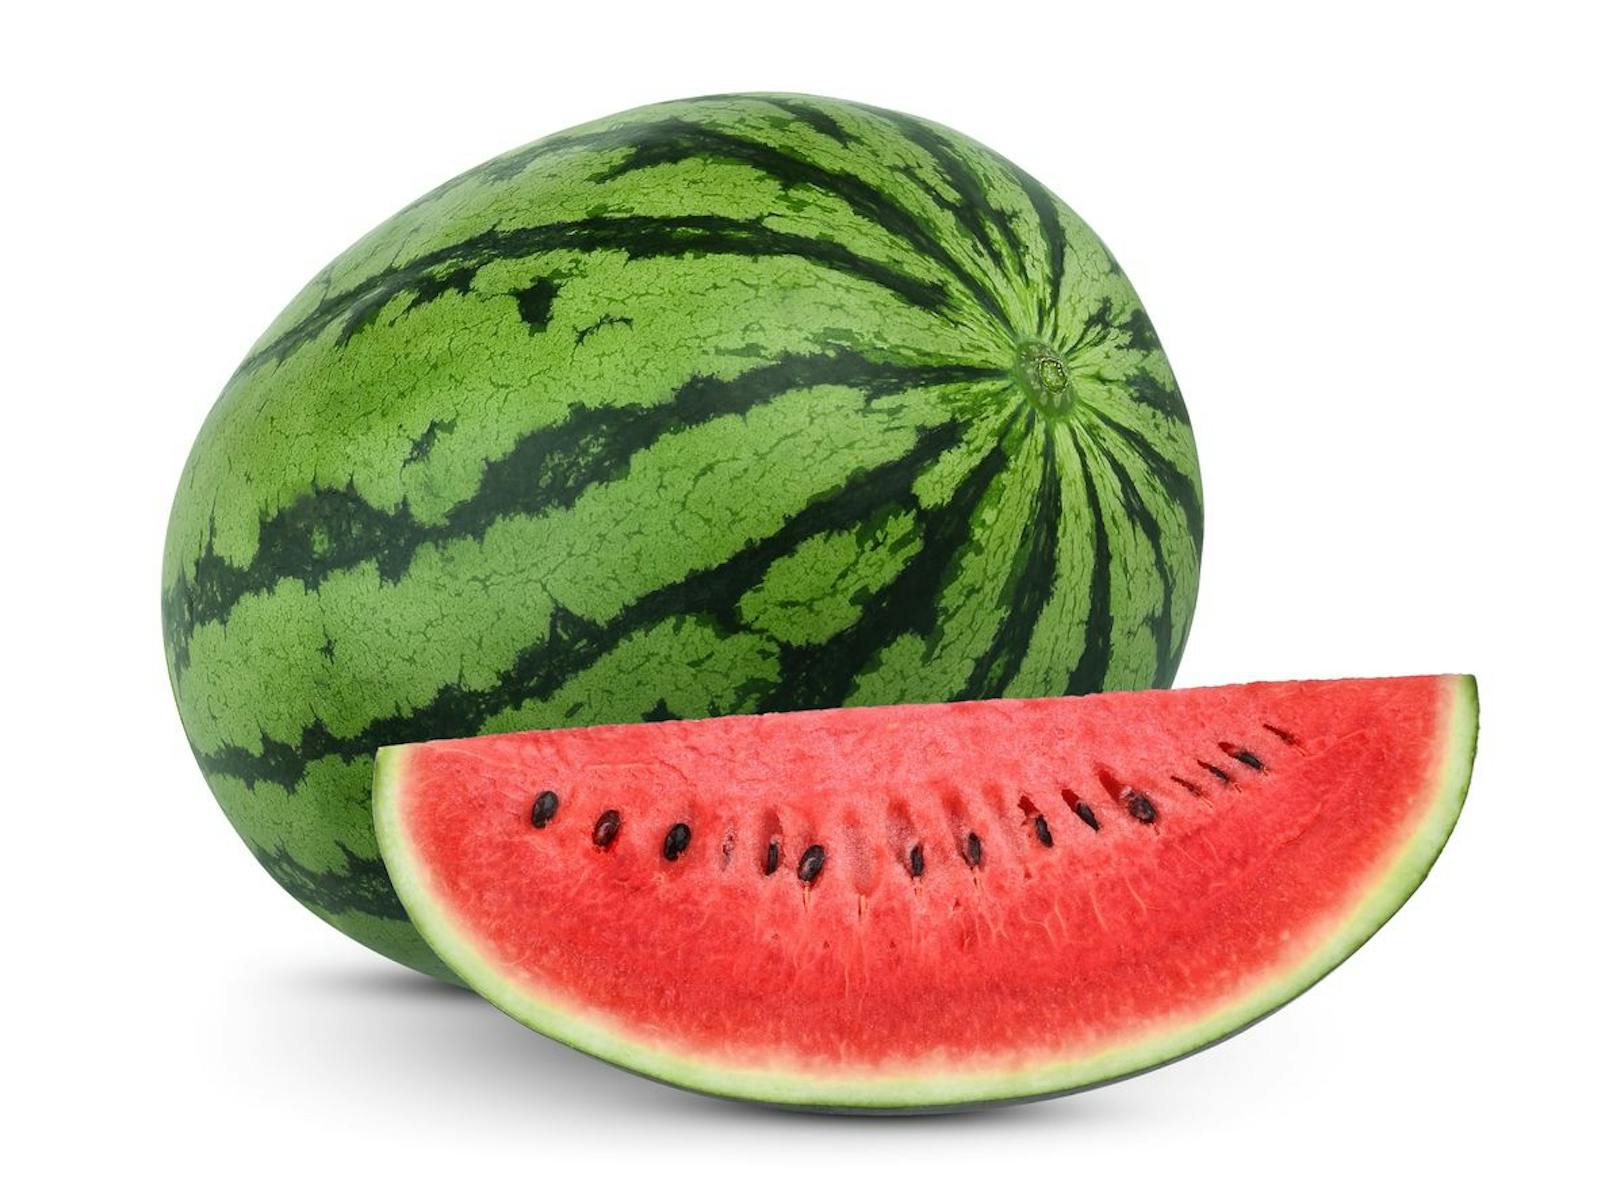 1. Auf die Form kommt es an: Eine symmetrische Melone, ohne Dellen, Schnitte oder Prellungen, hat ausreichend Wasser und Sonne abbekommen.